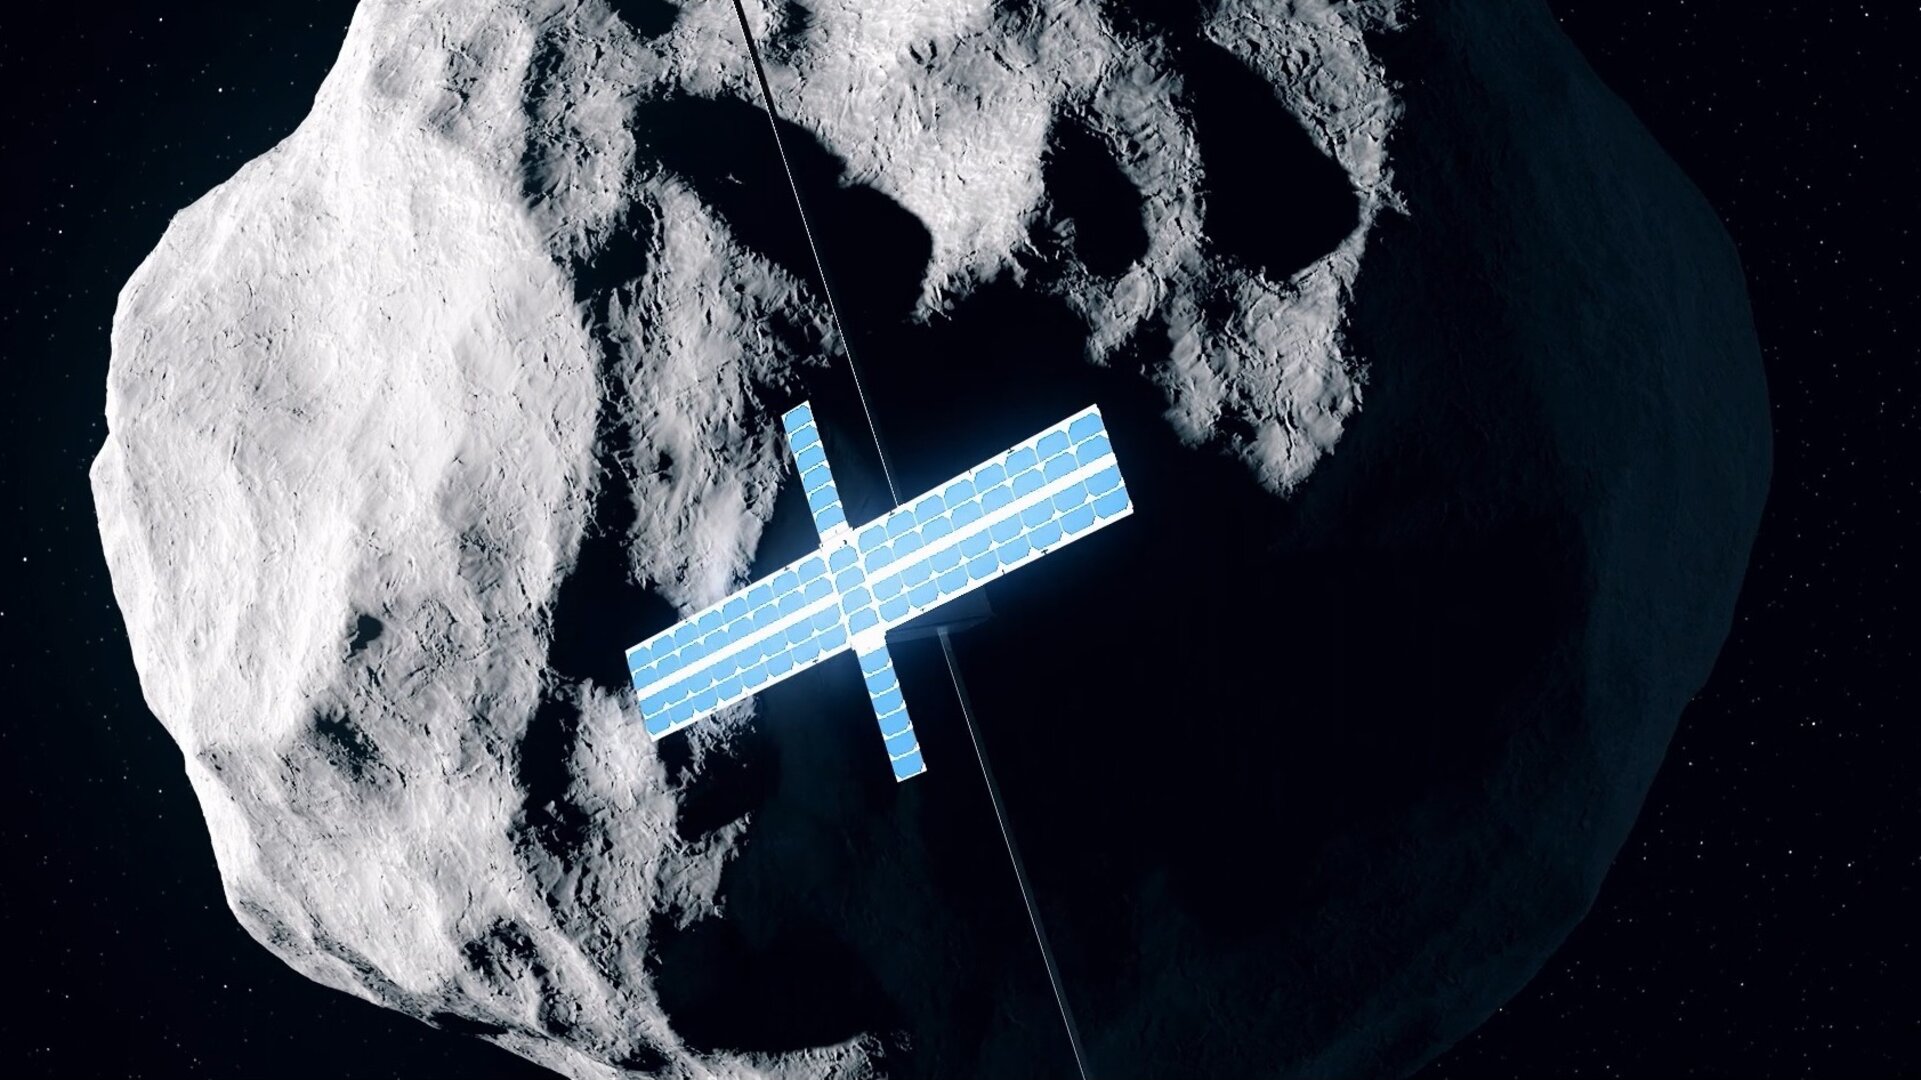 CubeSat nähert sich dem Asteroiden